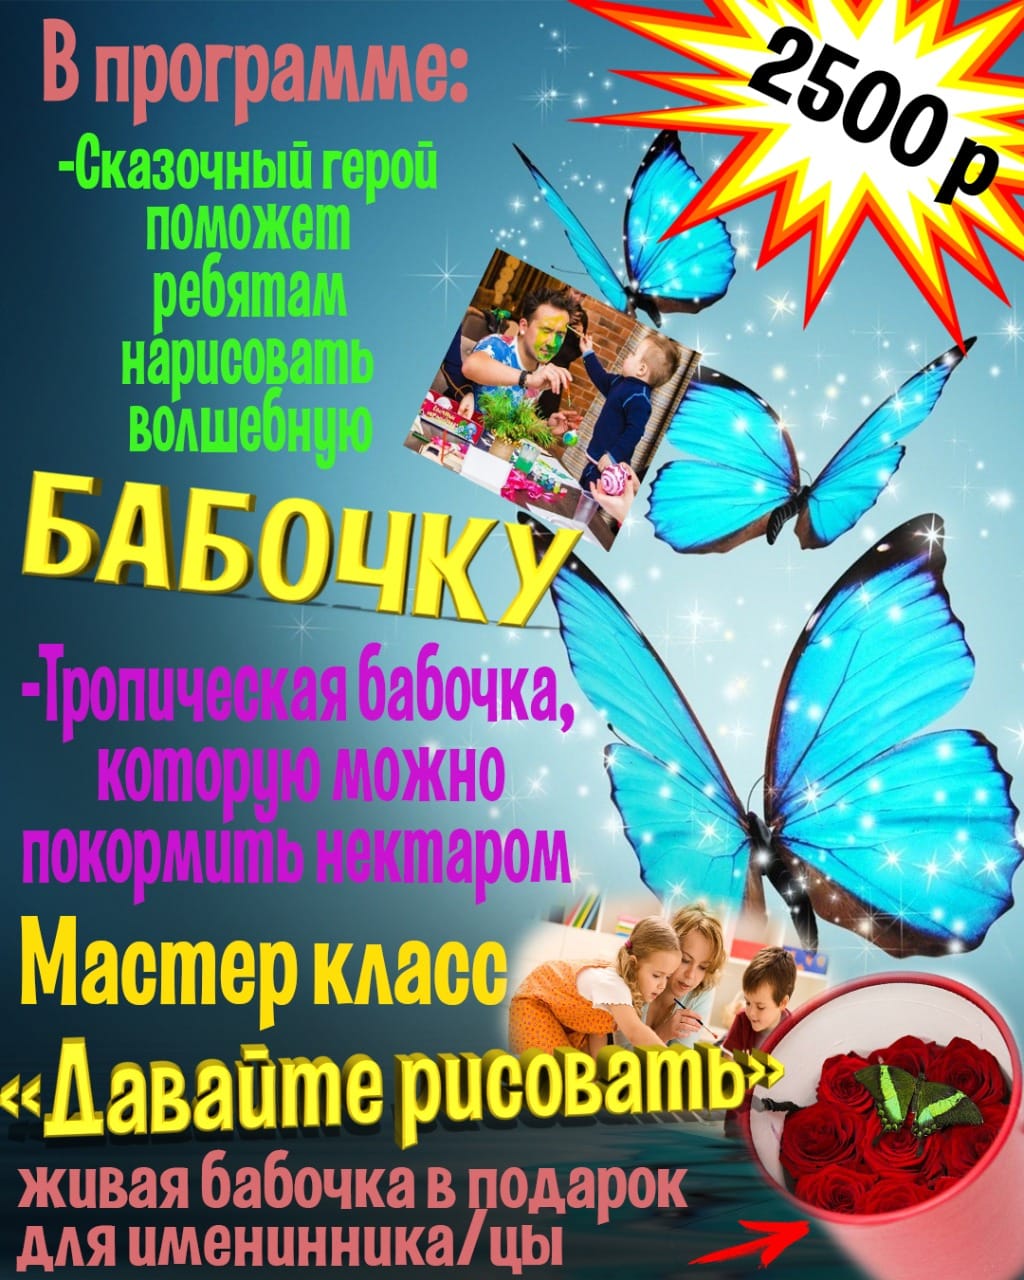 Детский научный клуб «Молекула» в Минске